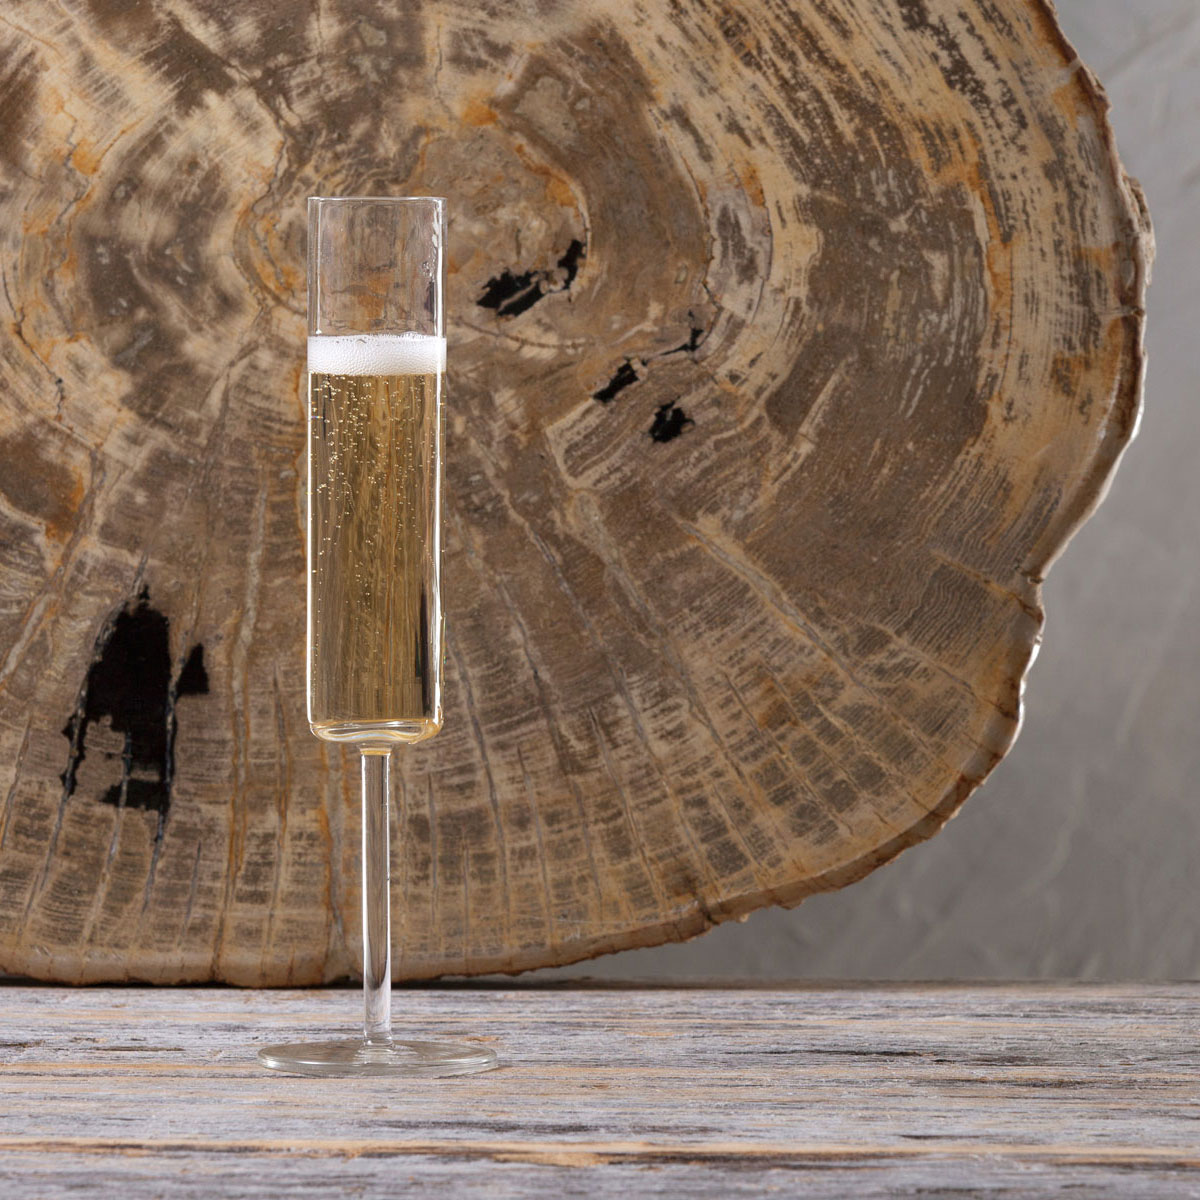 Voglia Nude 9 oz Glass Champagne Flute - Crystal - 6 count box